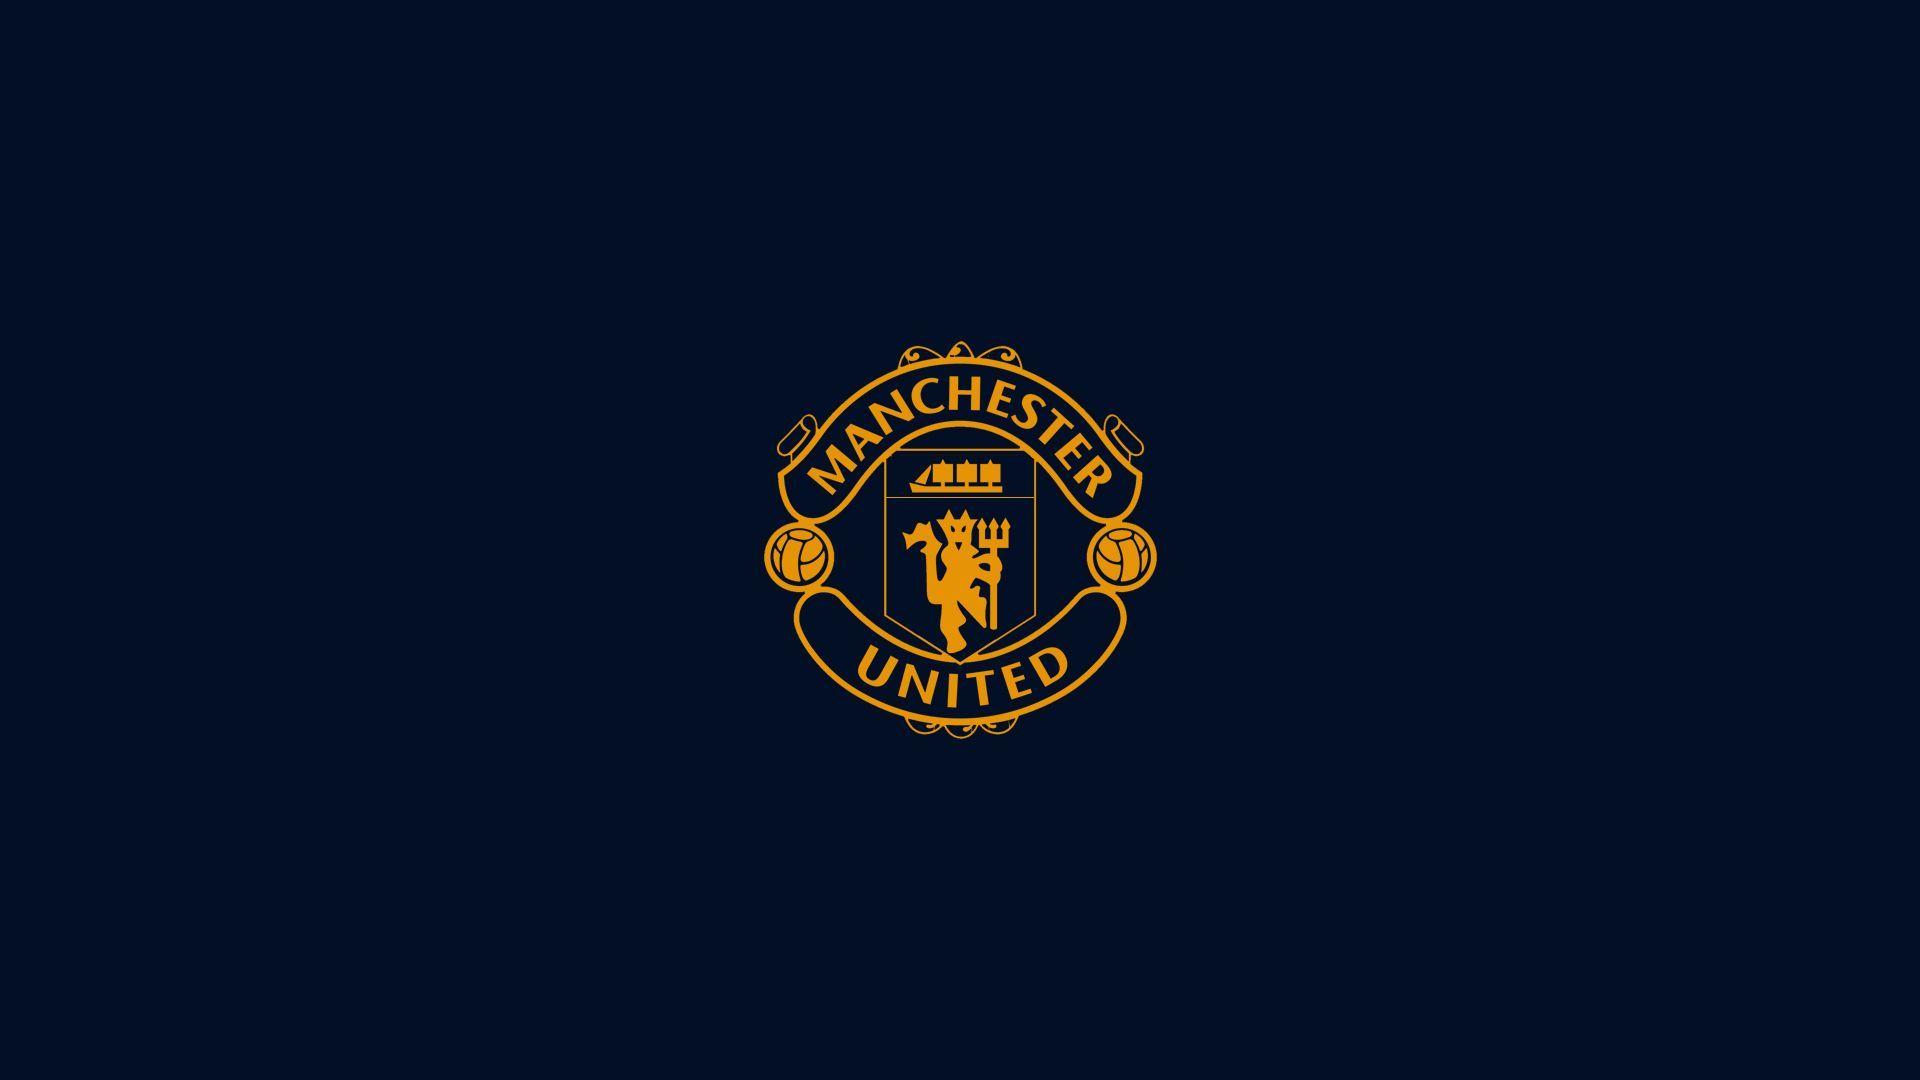 Các fan của Manchester United đâu rồi? Hãy cùng nhau chiêm ngưỡng những hình nền desktop Manchester United đầy sáng tạo và tuyệt đẹp này. Bạn sẽ không khỏi bất ngờ trước những hình ảnh được thiết kế một cách tinh tế, sắc nét và đẹp mắt như vậy.